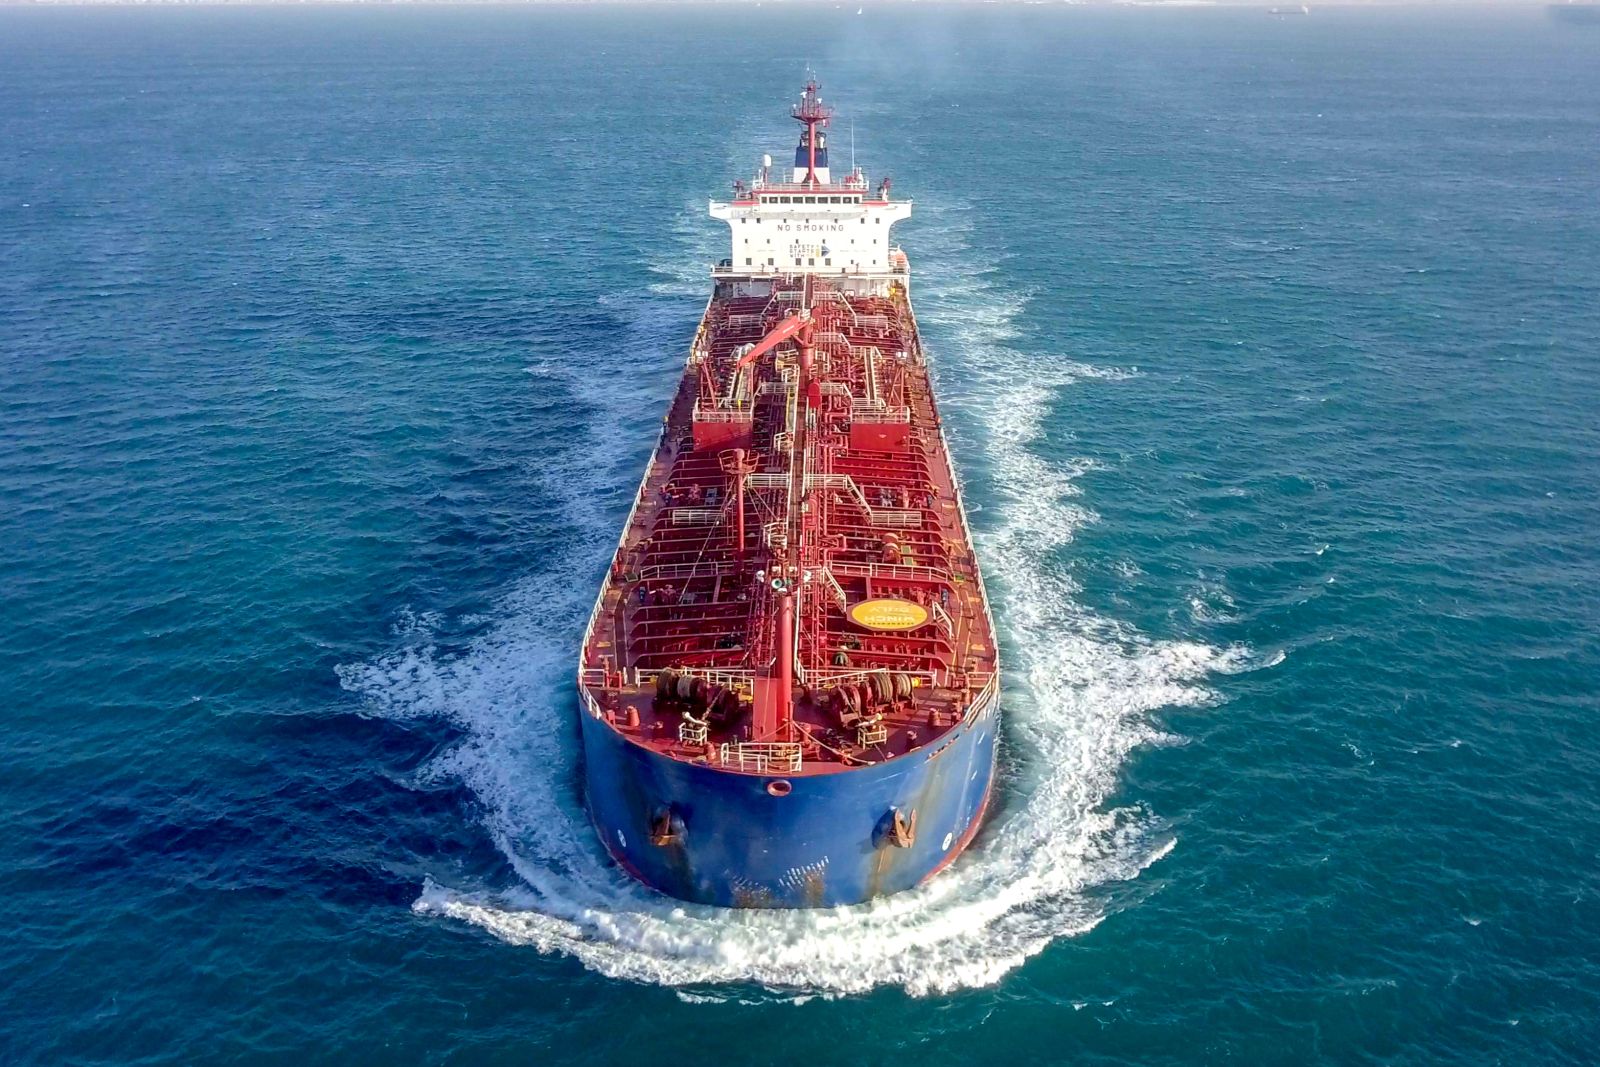 Oil - Oil tanker in open sea by StockStudio via Shutterstock